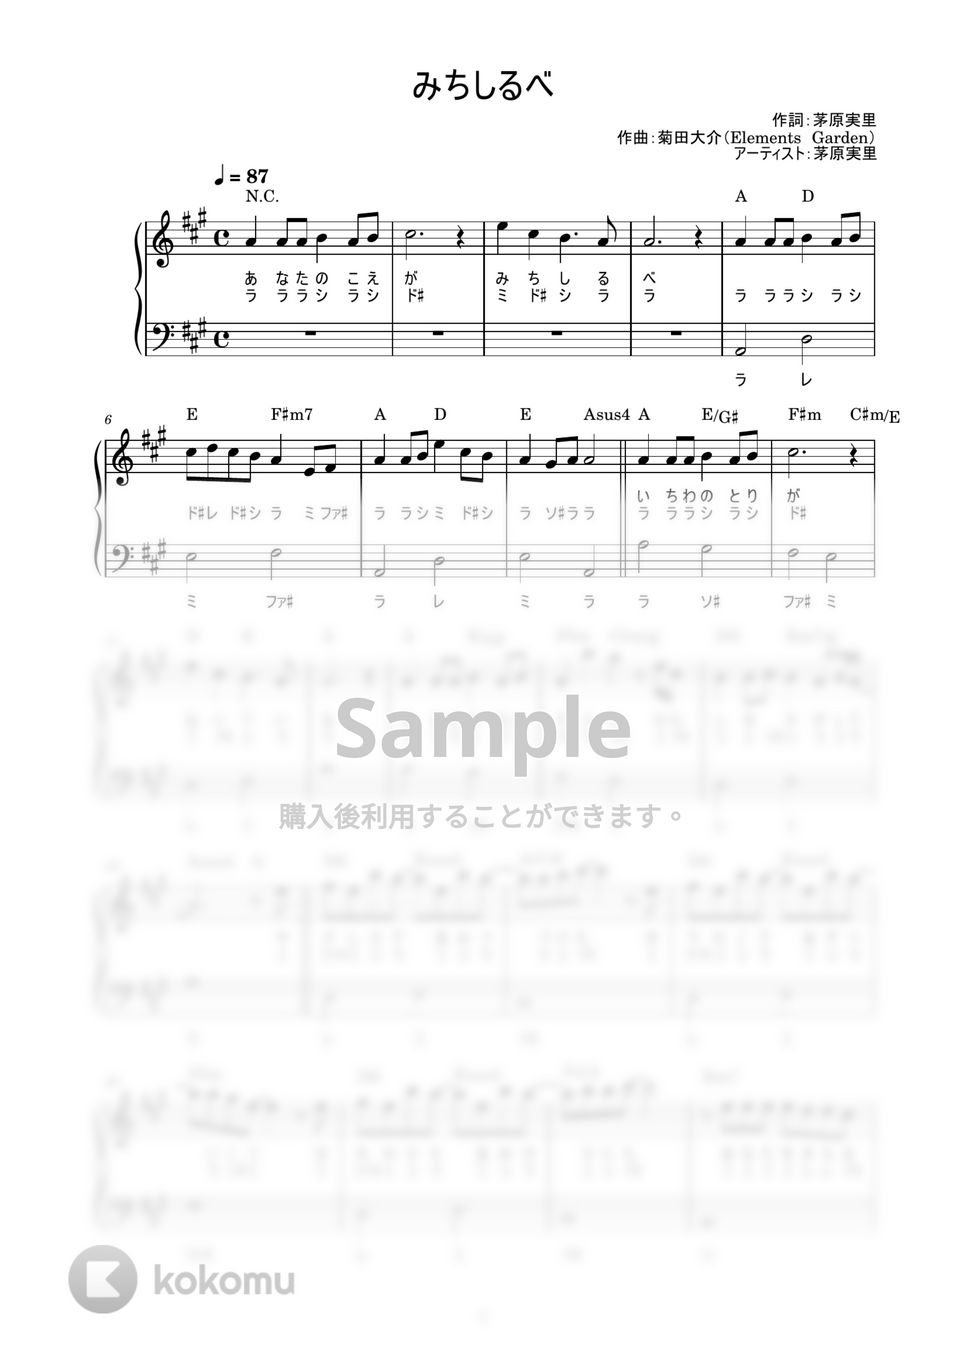 茅原実里 - みちしるべ (かんたん / 歌詞付き / ドレミ付き / 初心者) by piano.tokyo